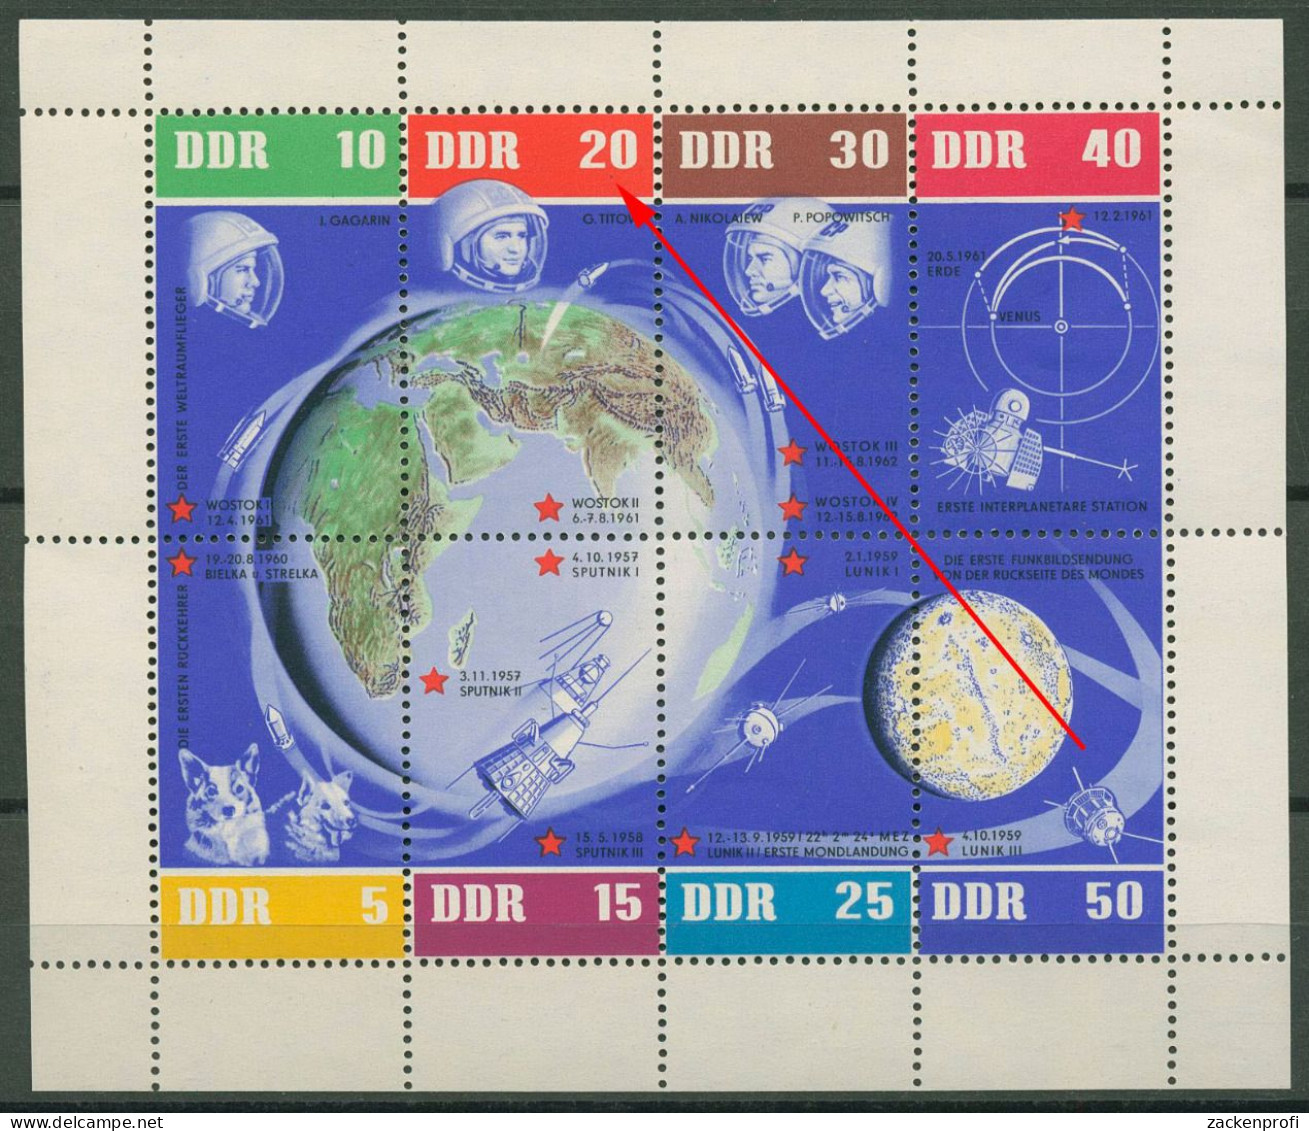 DDR 1962 Weltraumflüge Mit Plattenfehler 926/33 K (15 AIV) Postfrisch (C80553) - Errors & Oddities